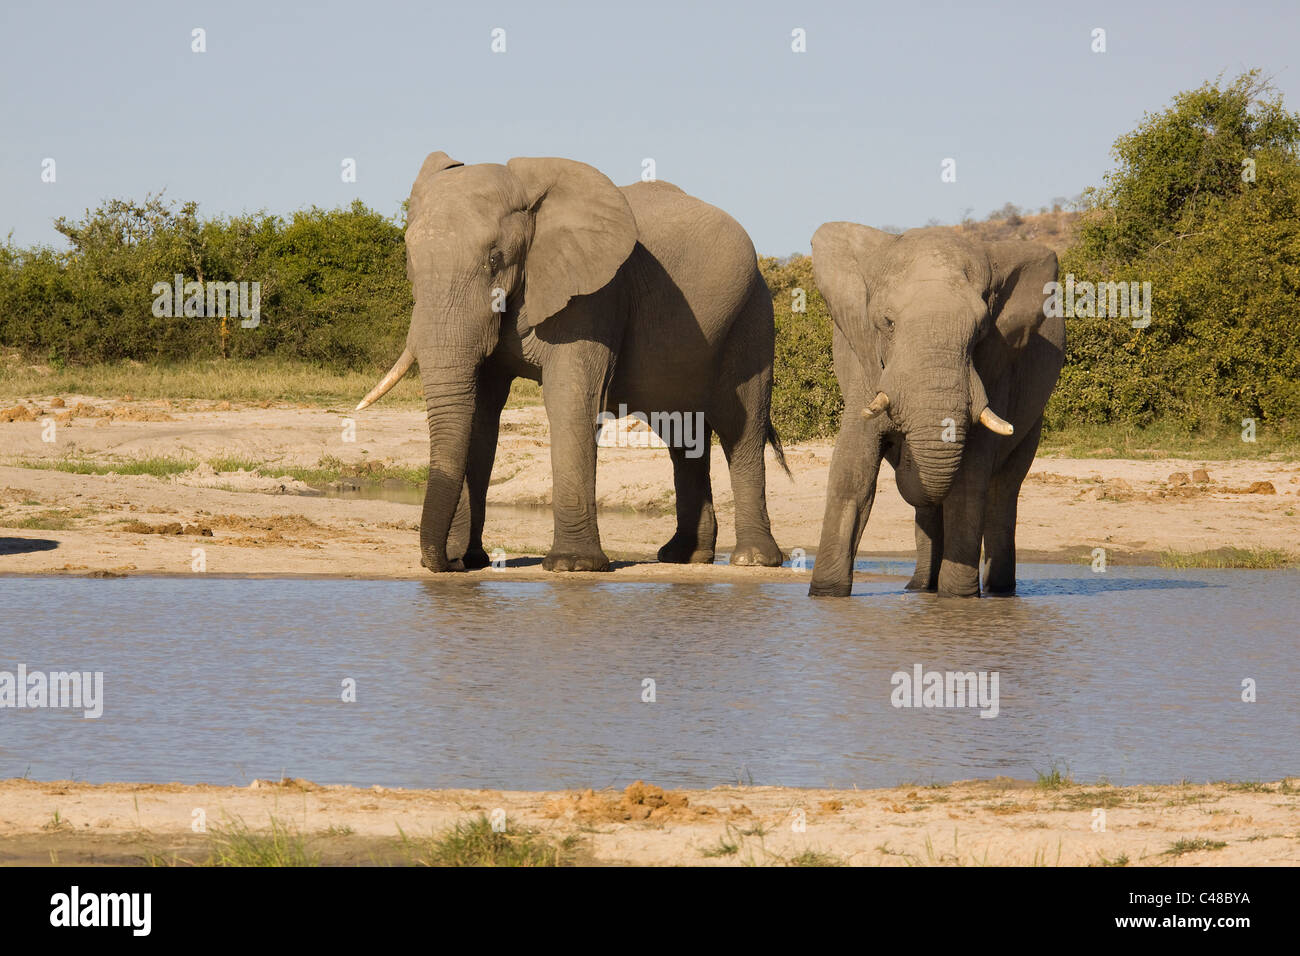 Afrikanische Elefanten (Loxodonta africana) beim Trinken suis natürlichen Wasserloch, Savuti, Botswana, Afrika Banque D'Images